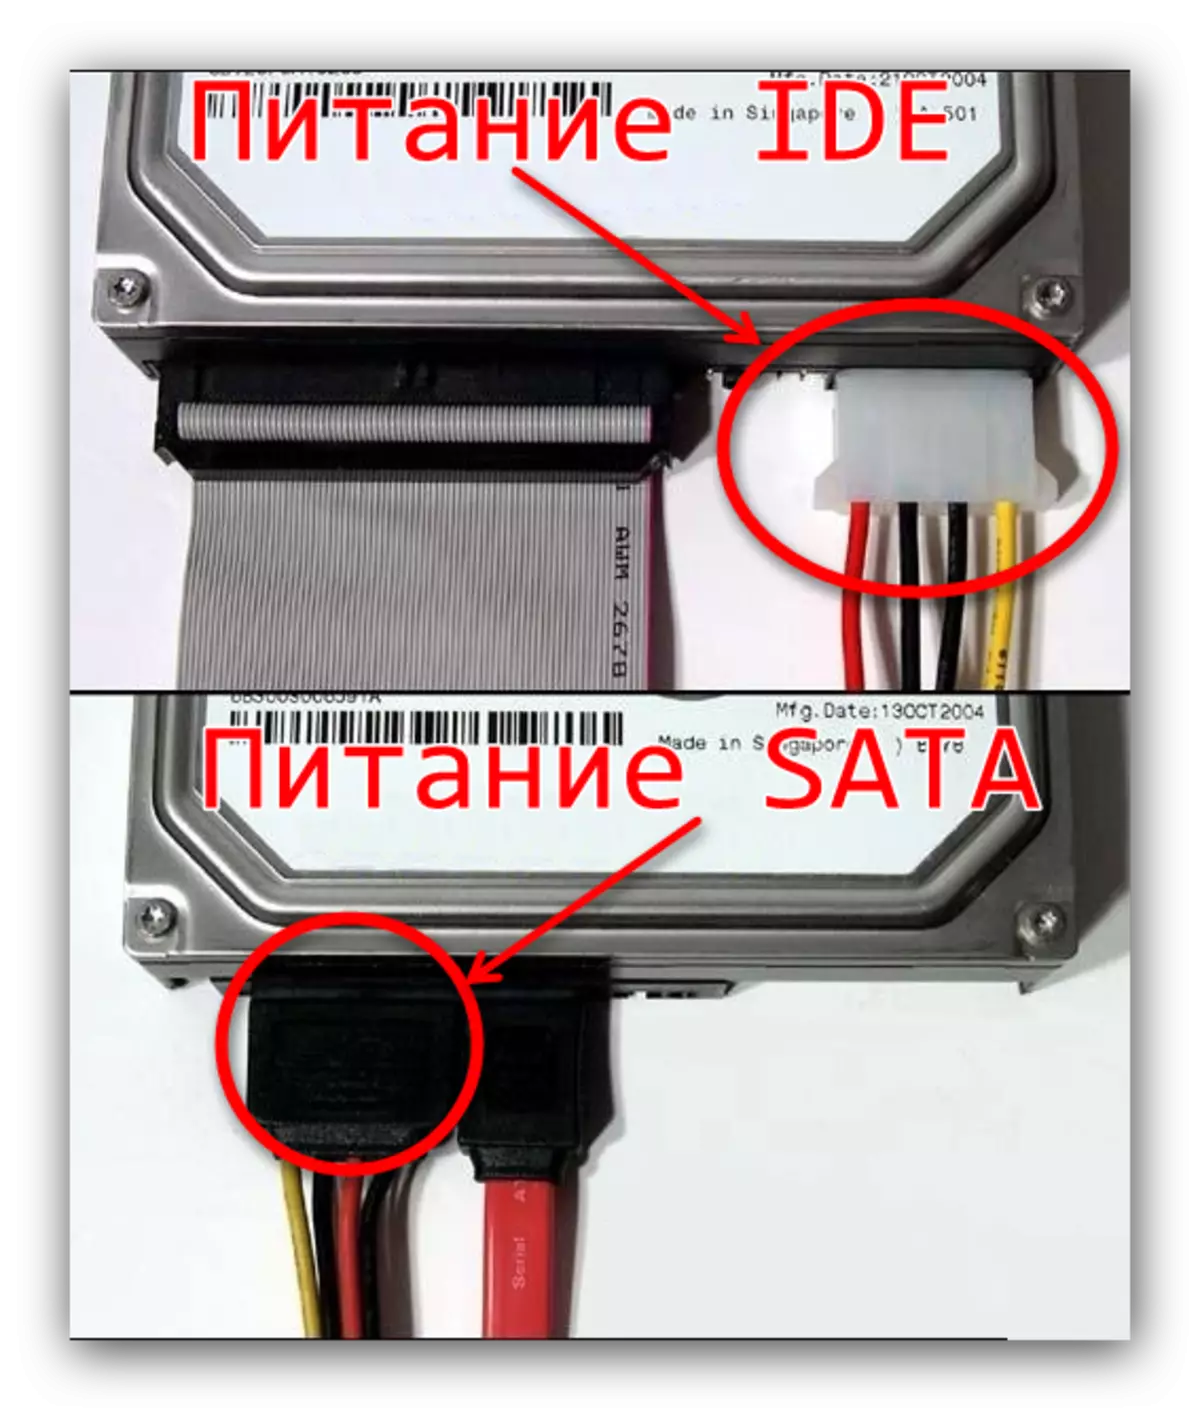 Power IDE i SATA per connectar una unitat